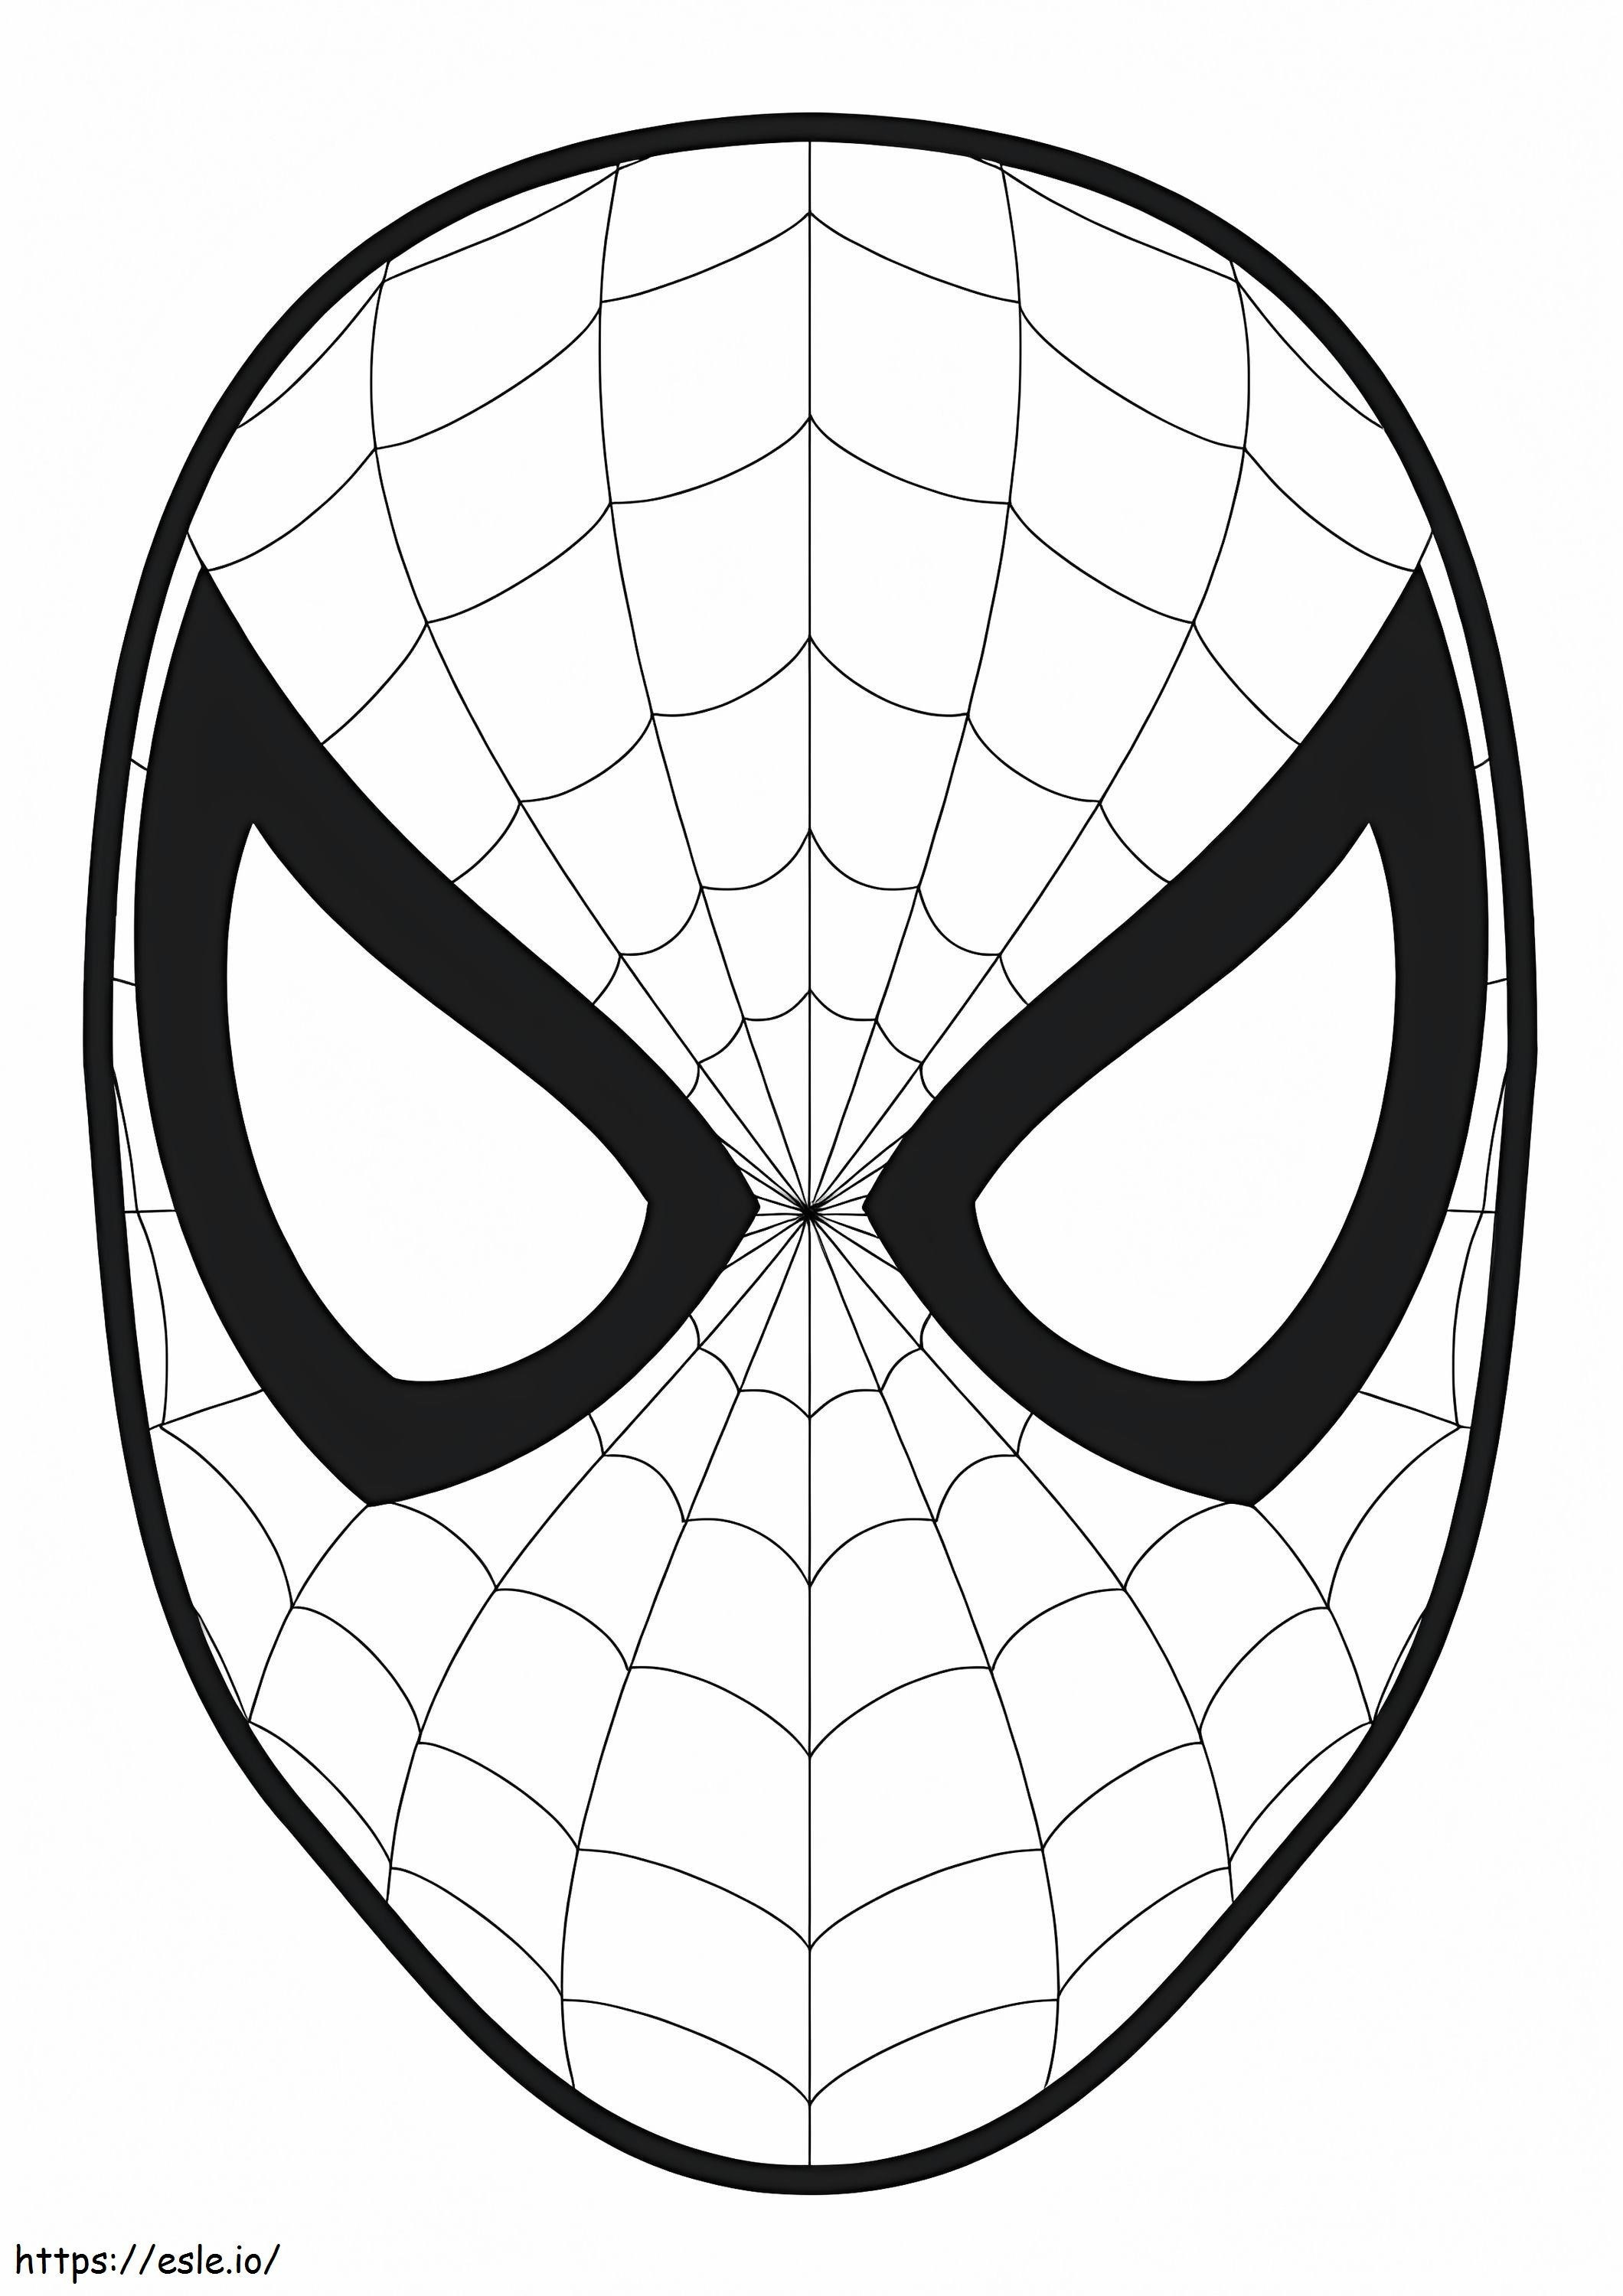 Máscara Básica do Homem-Aranha para colorir